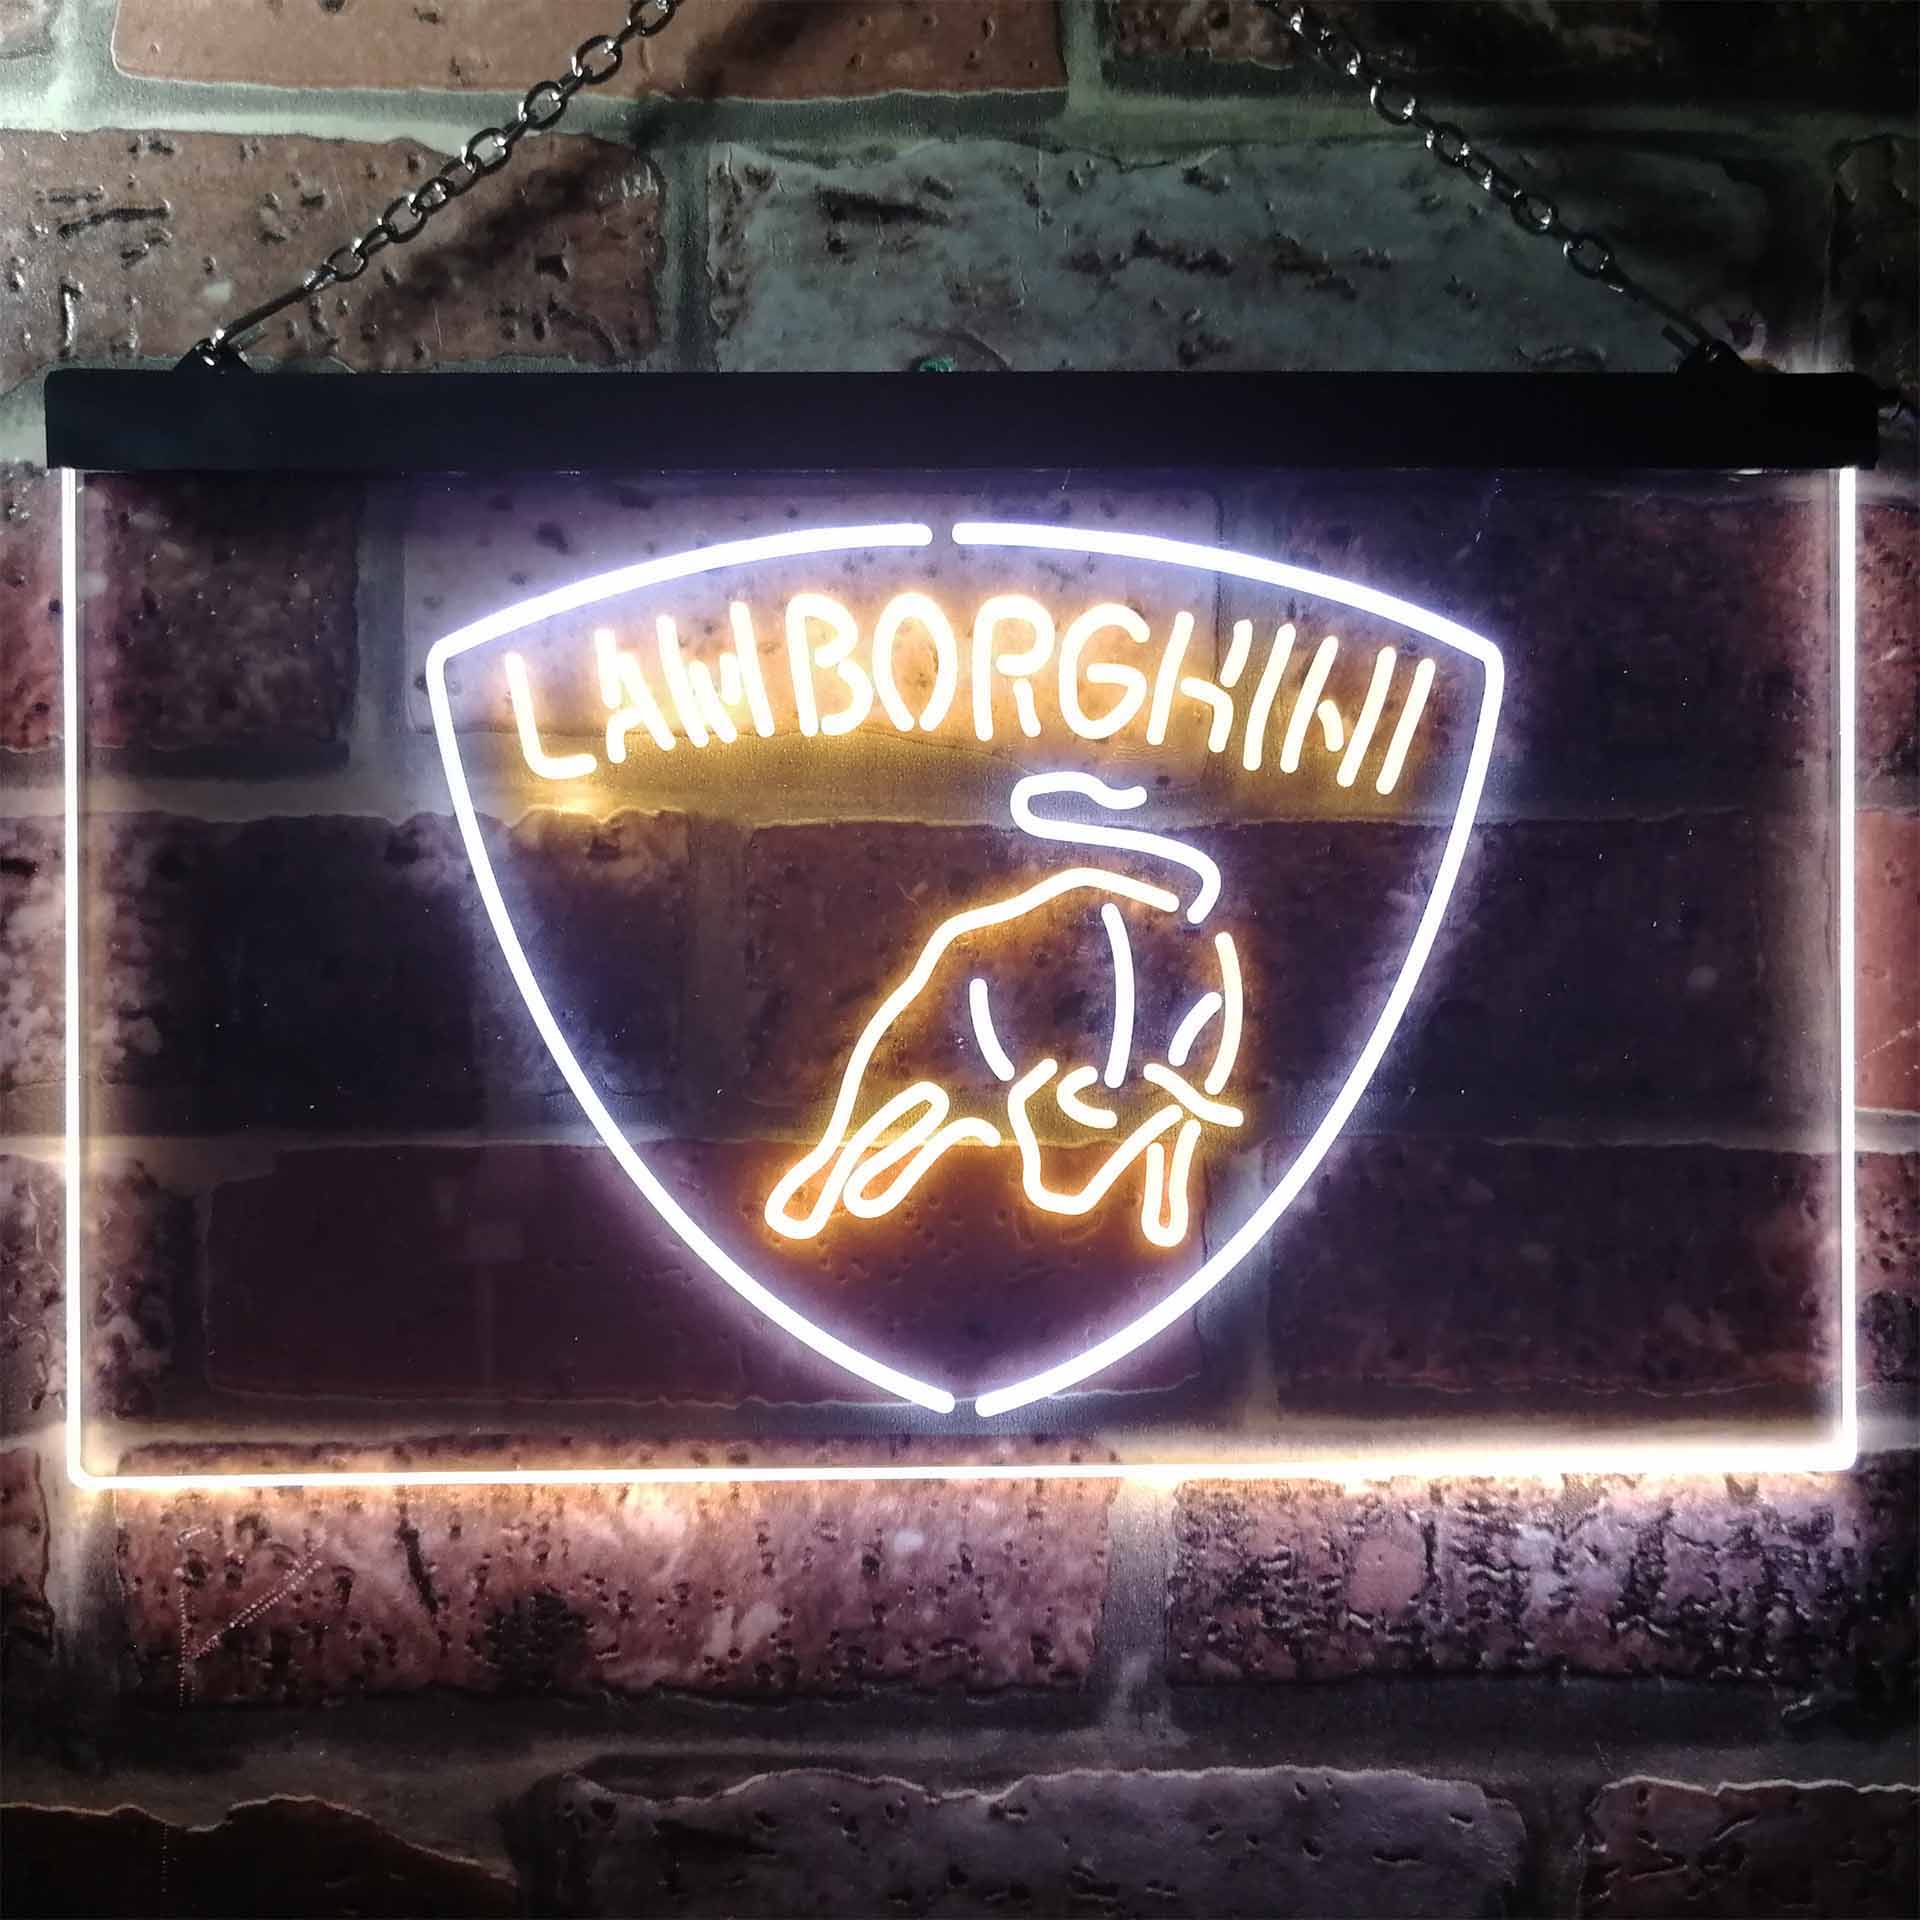 Lamborghini Sport Car LED Neon Sign